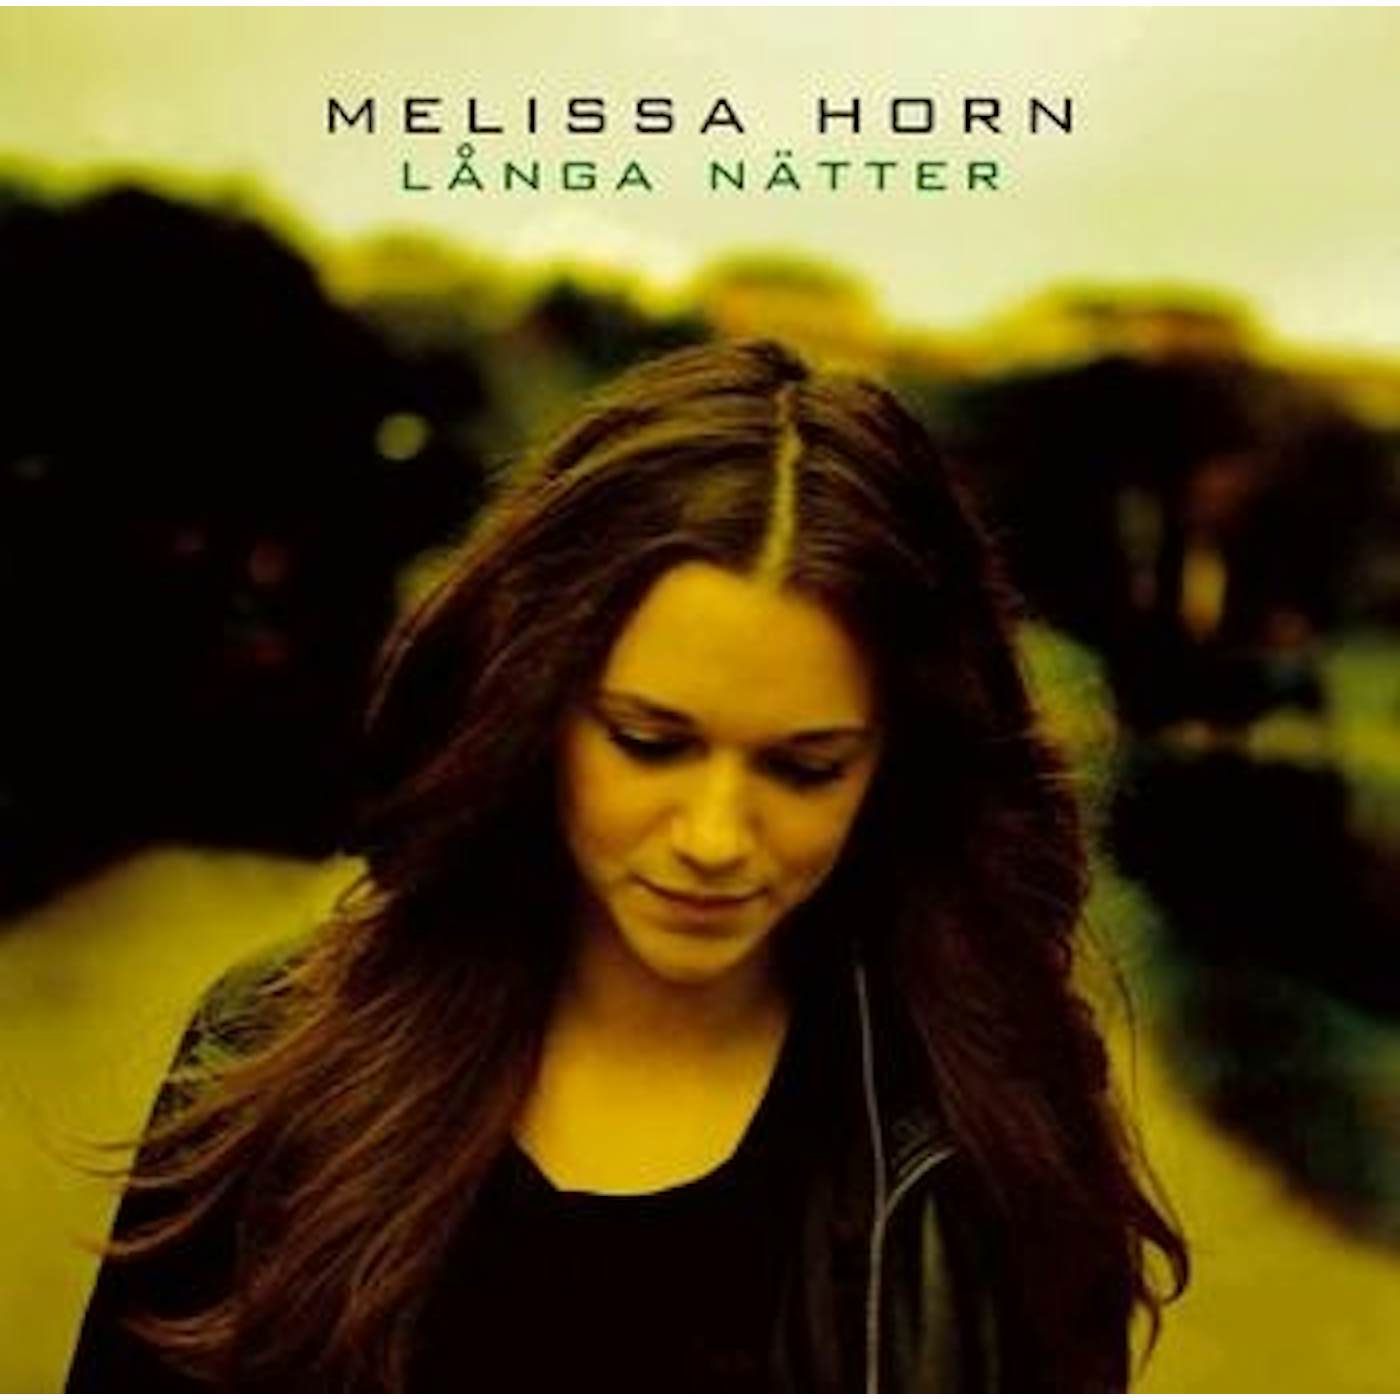 Melissa Horn LANGA NATTER Vinyl Record - Sweden Release